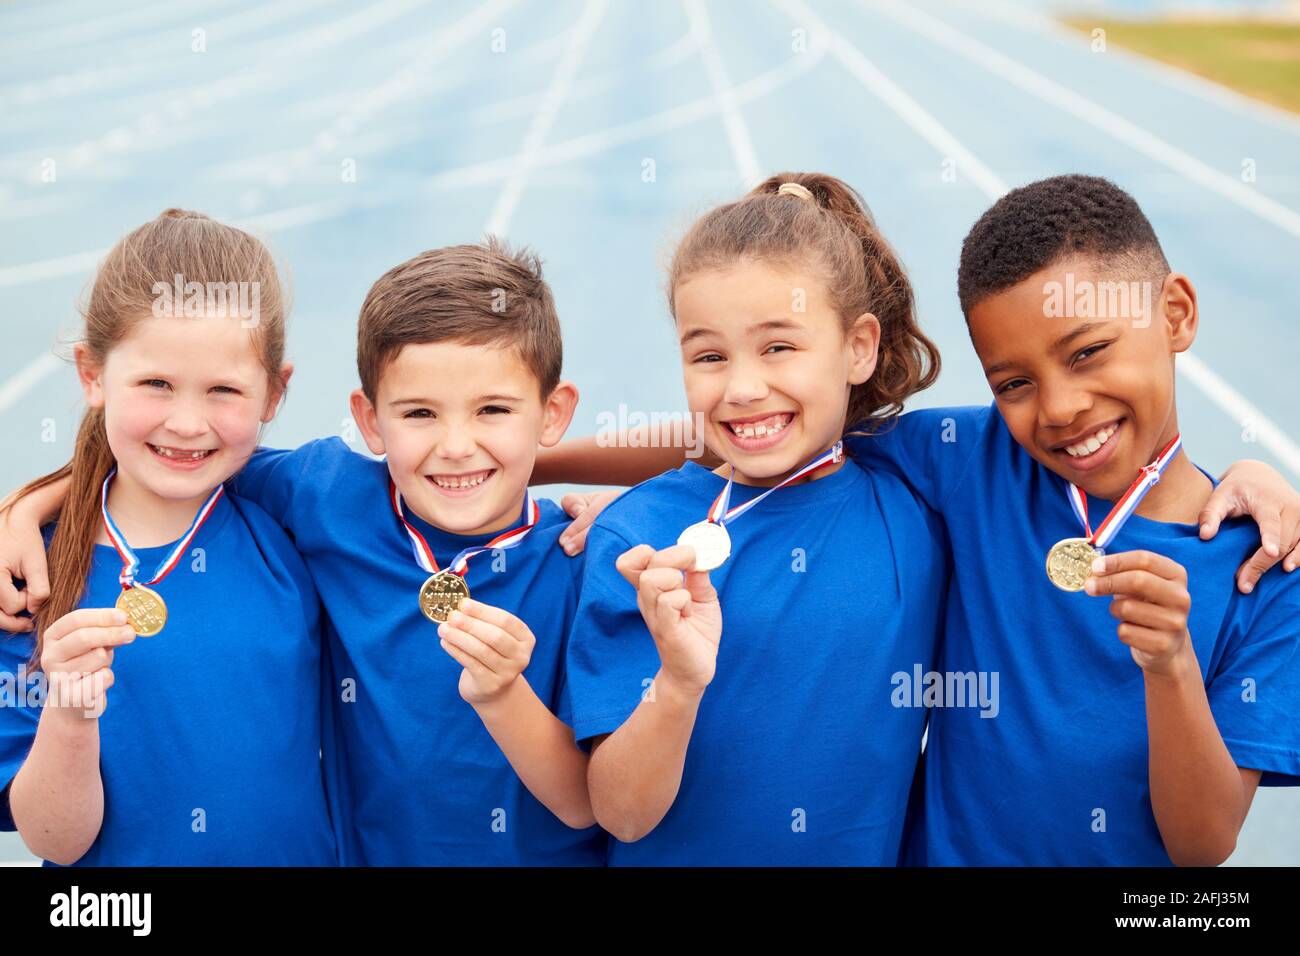 Ritratto di bambini di mostrare a tutti i vincitori di medaglie sulla giornata di sport Foto Stock